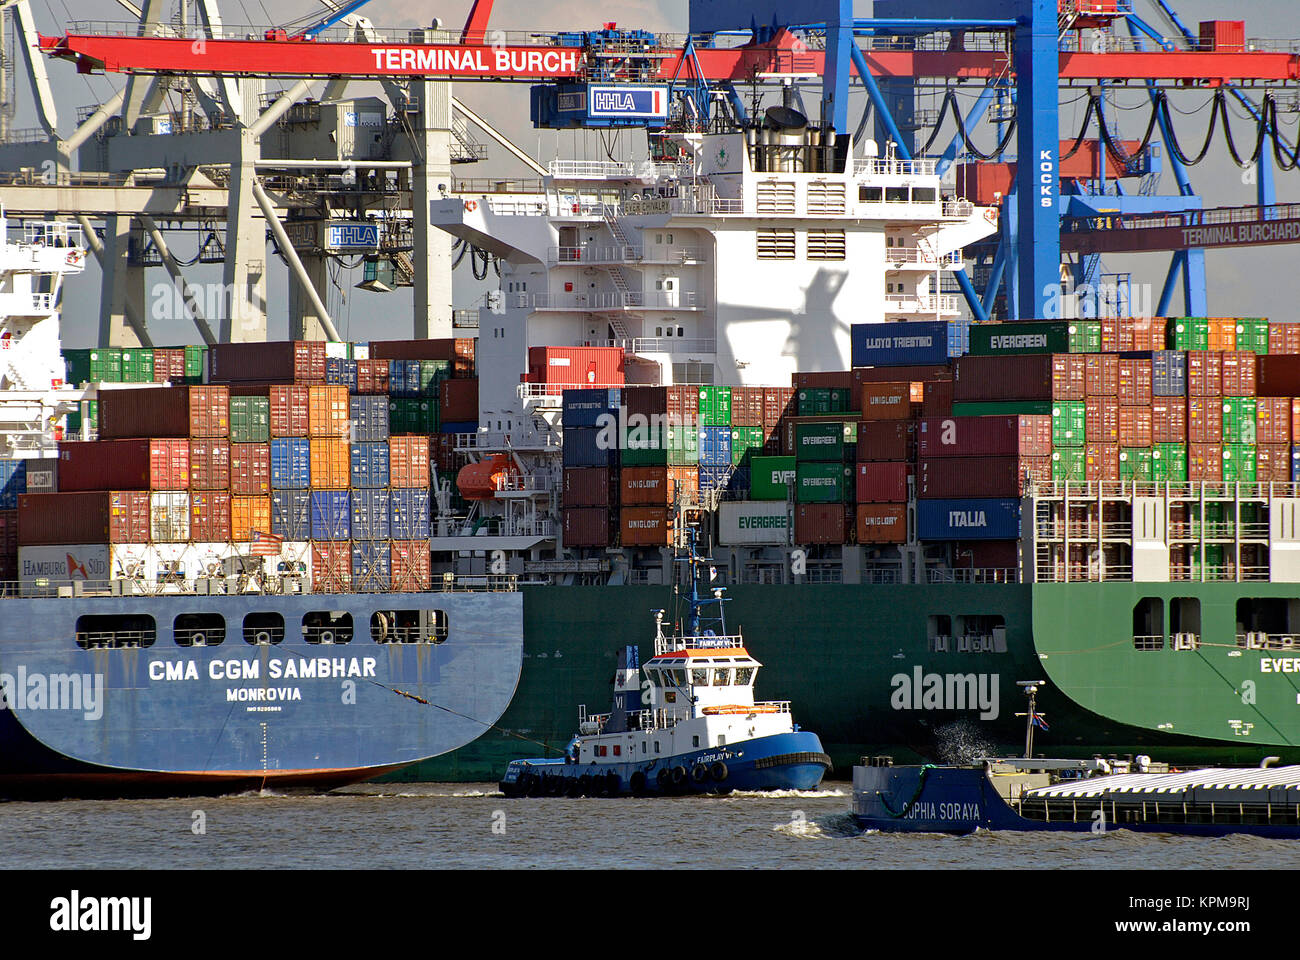 Hamburg, eine der schönsten und beliebtesten Reiseziele der Welt. Container Terminal Burchardkai, Hafen Hamburg. Stockfoto